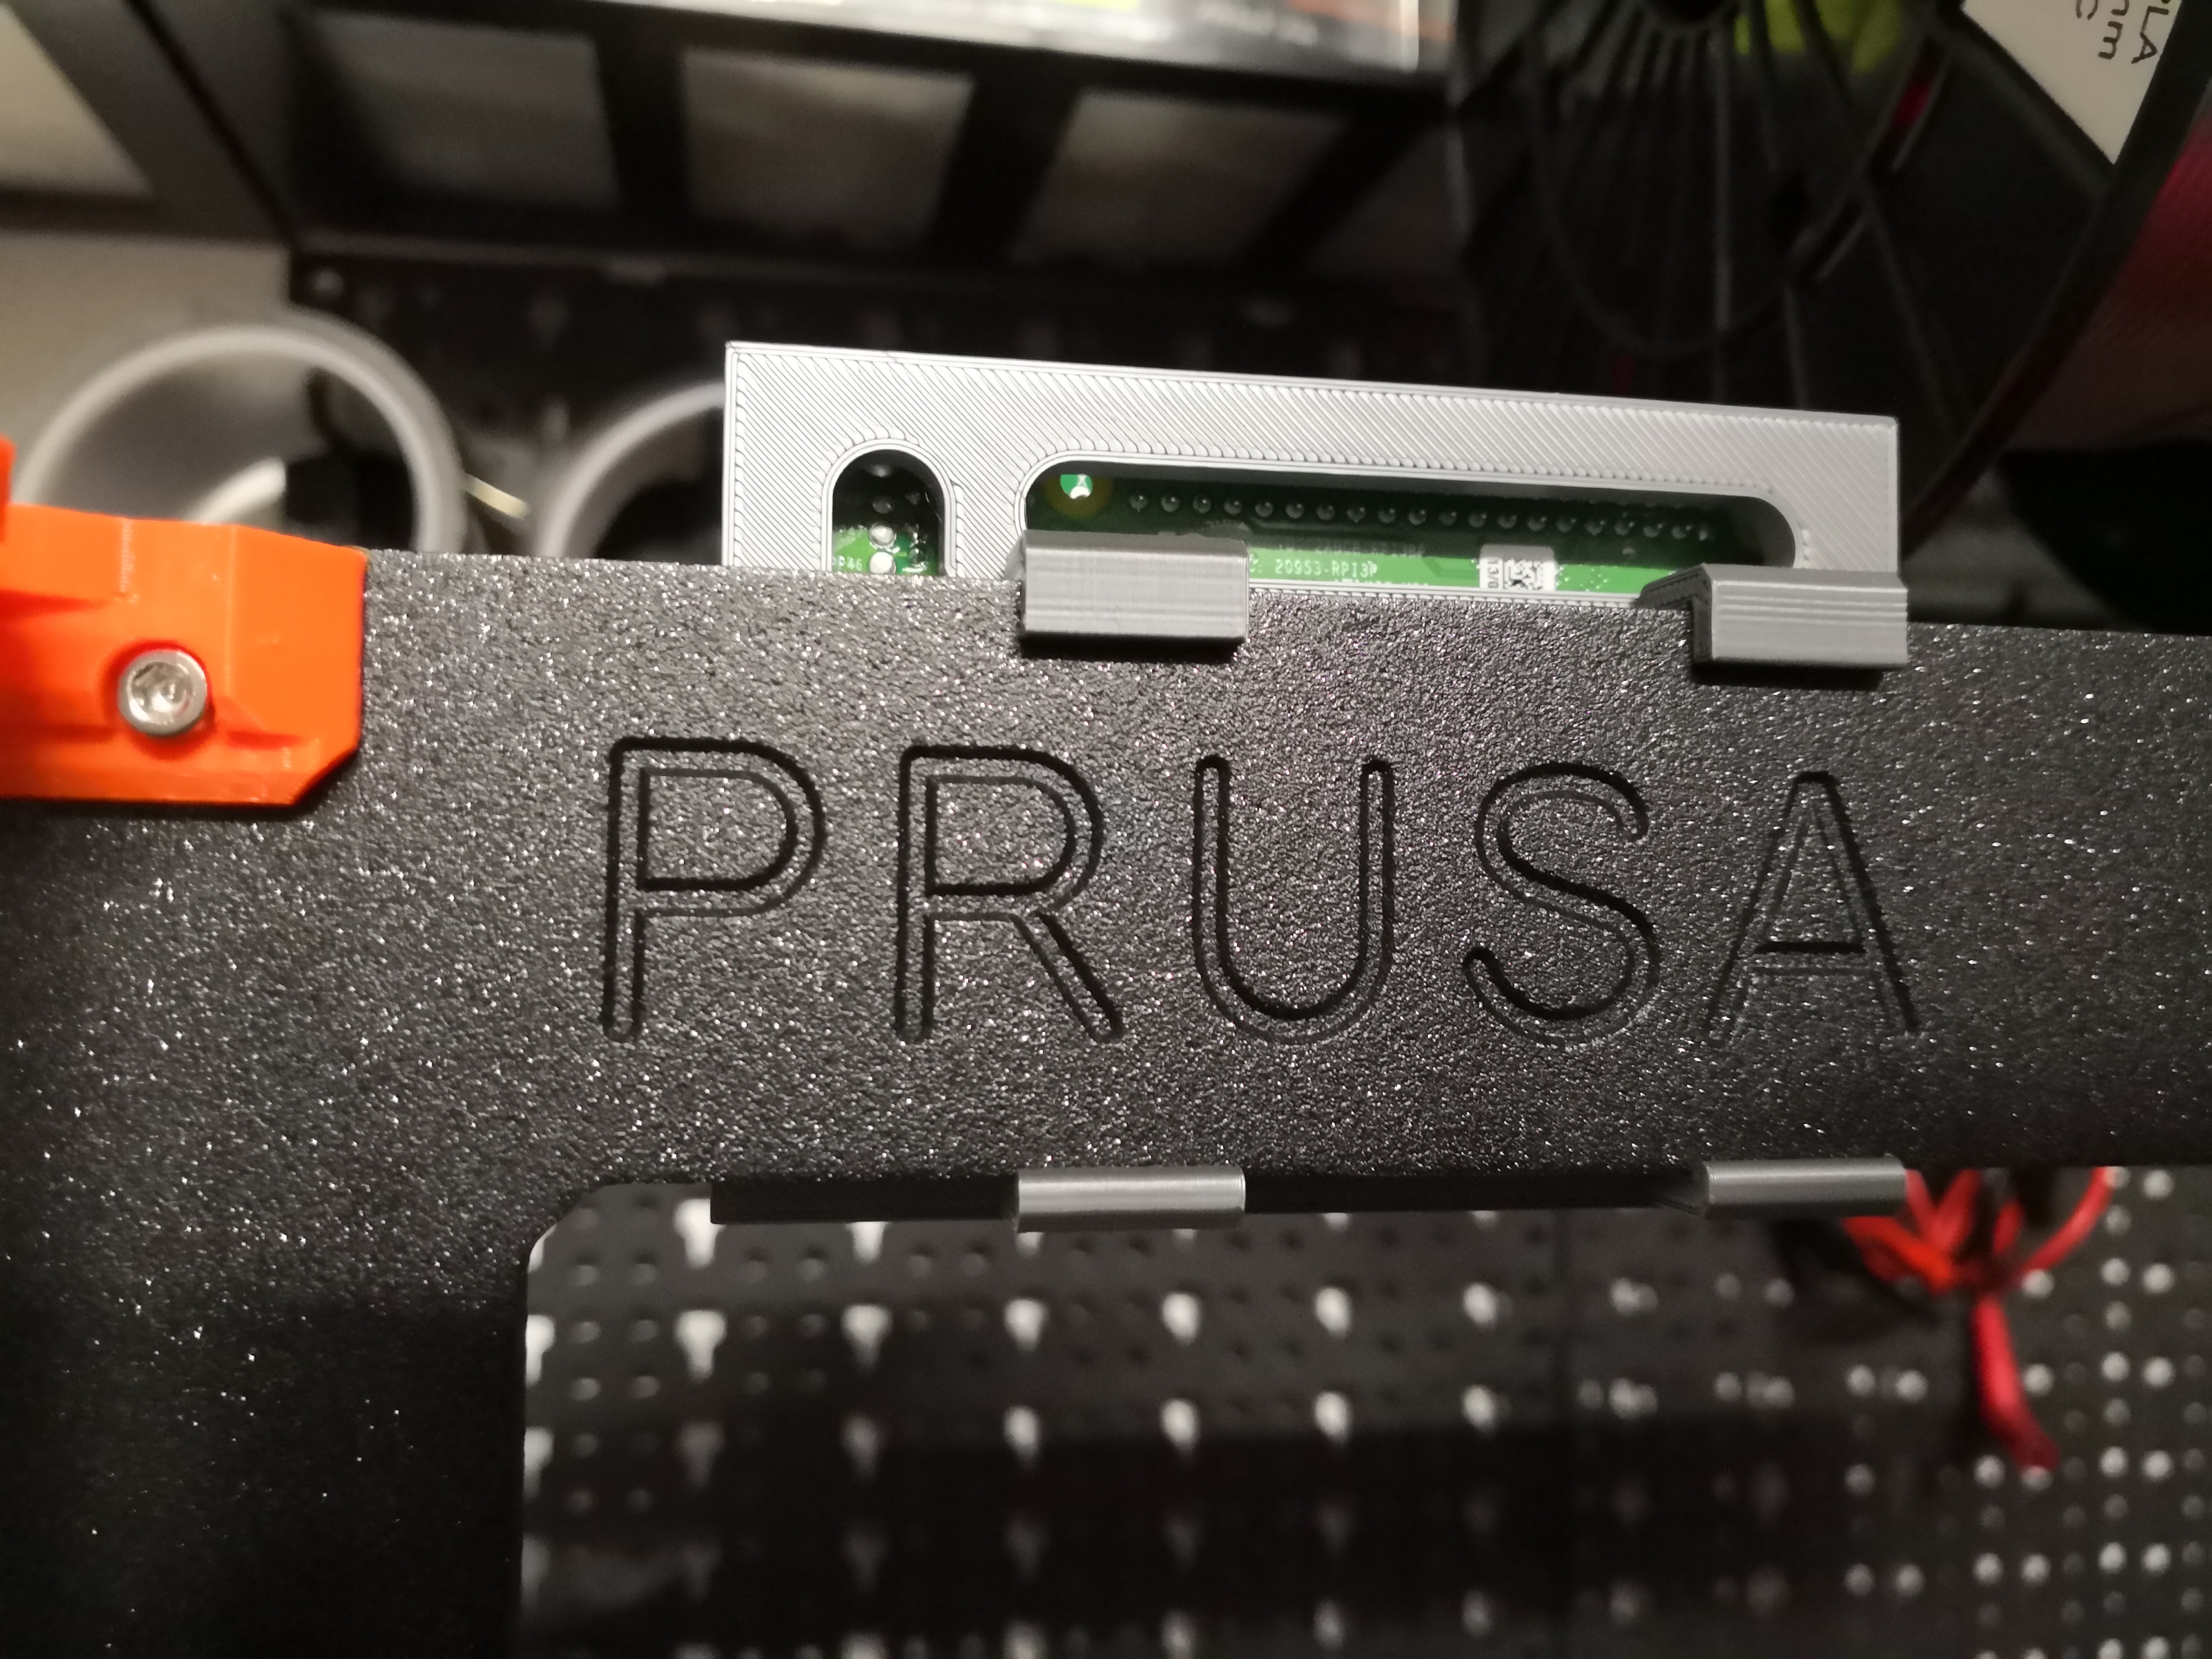 Longer clamps for Kimframes "Raspberry Pi 3 holder for Prusa frame"